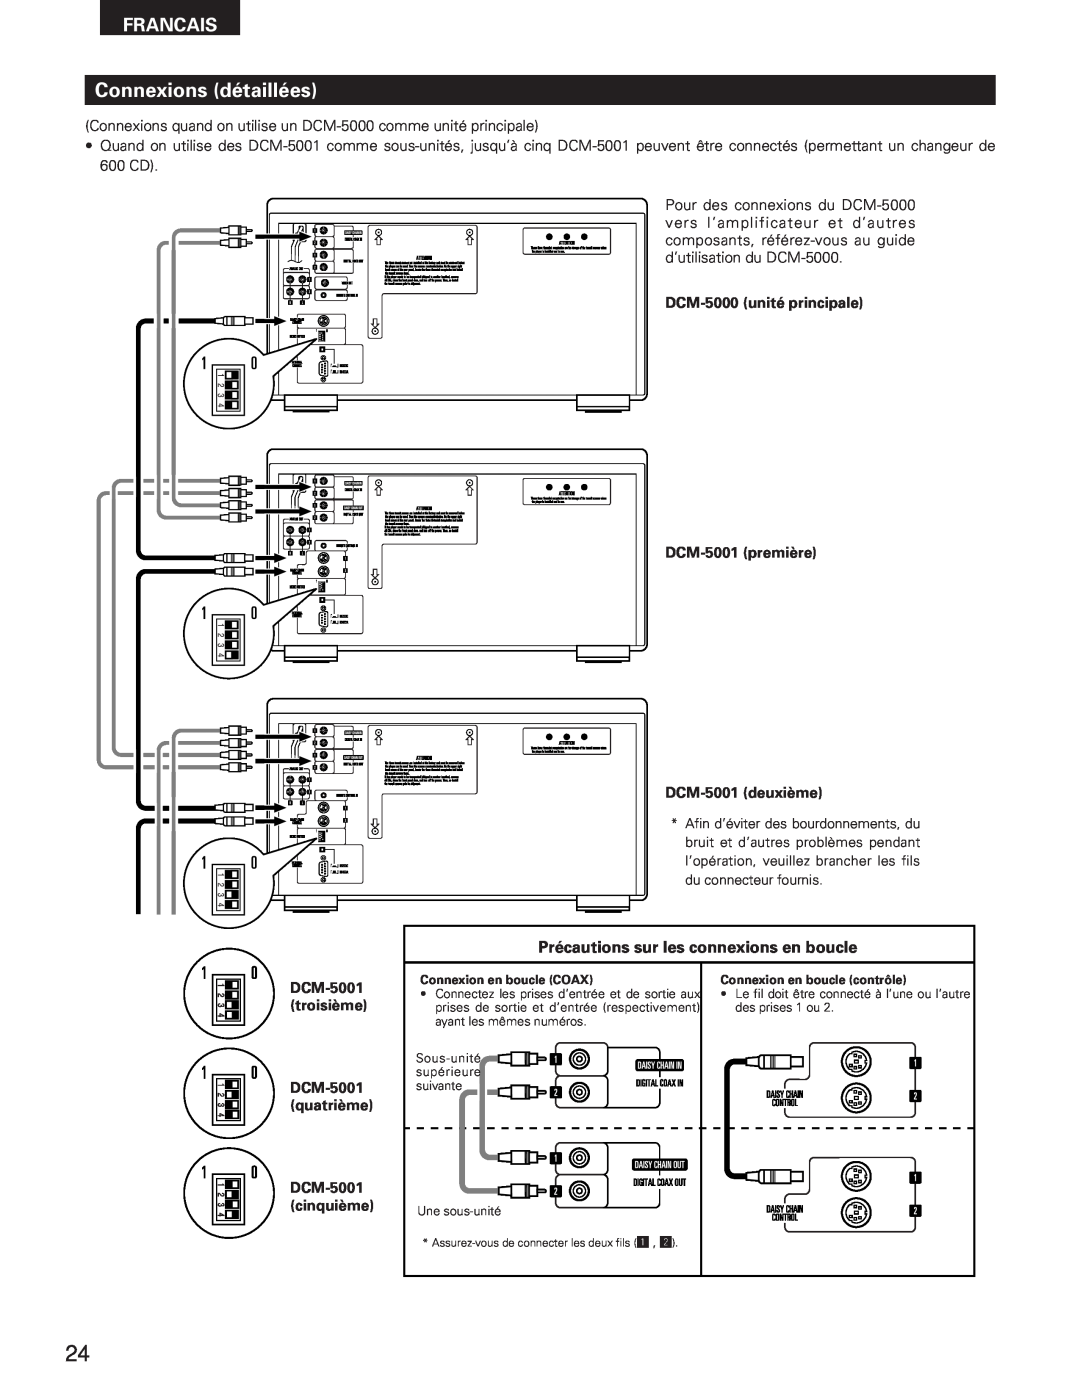 Denon DCM-5001 manual Connexions détaillées, Précautions sur les connexions en boucle, Francais 